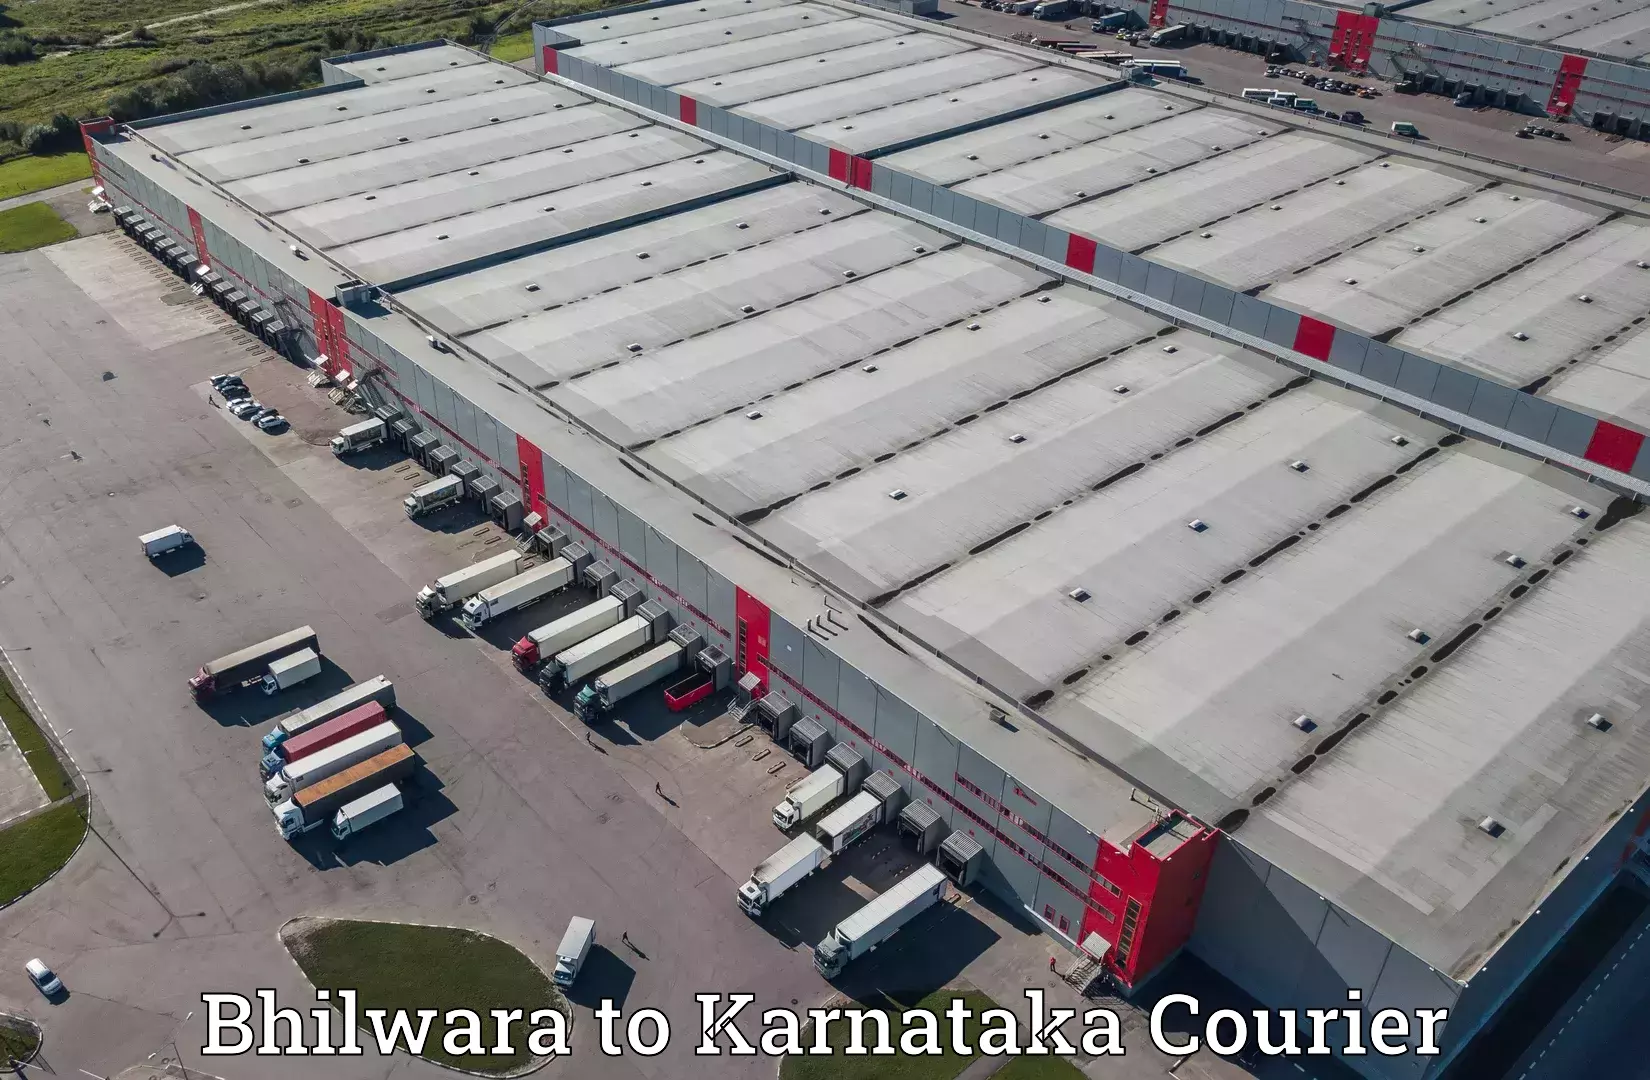 Expedited shipping methods Bhilwara to Mangalore Port